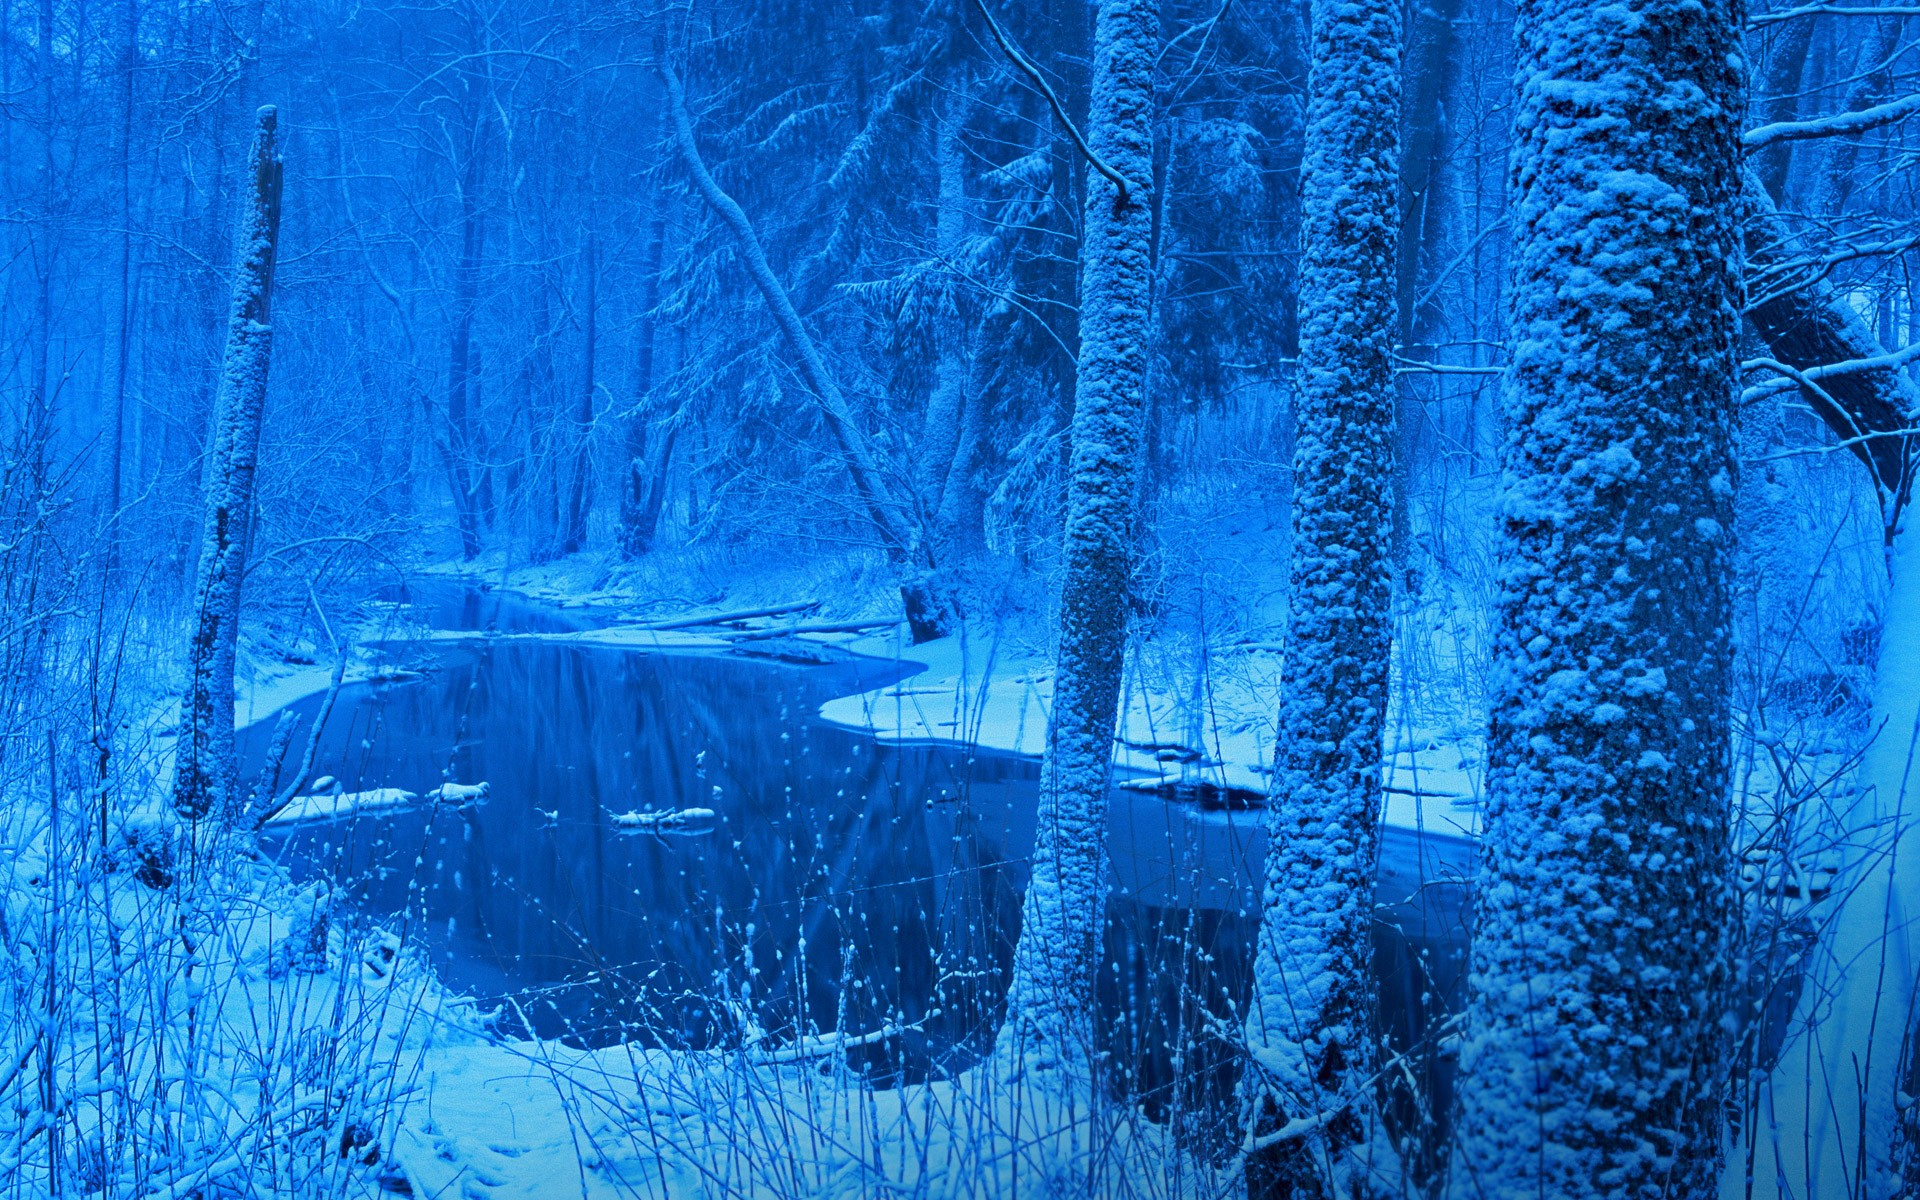 Фф и в морозном лесу навеки останусь. Беловежская пуща природа зима. Ледяной лес. Голубой снег. Зимний пейзаж в синих тонах.